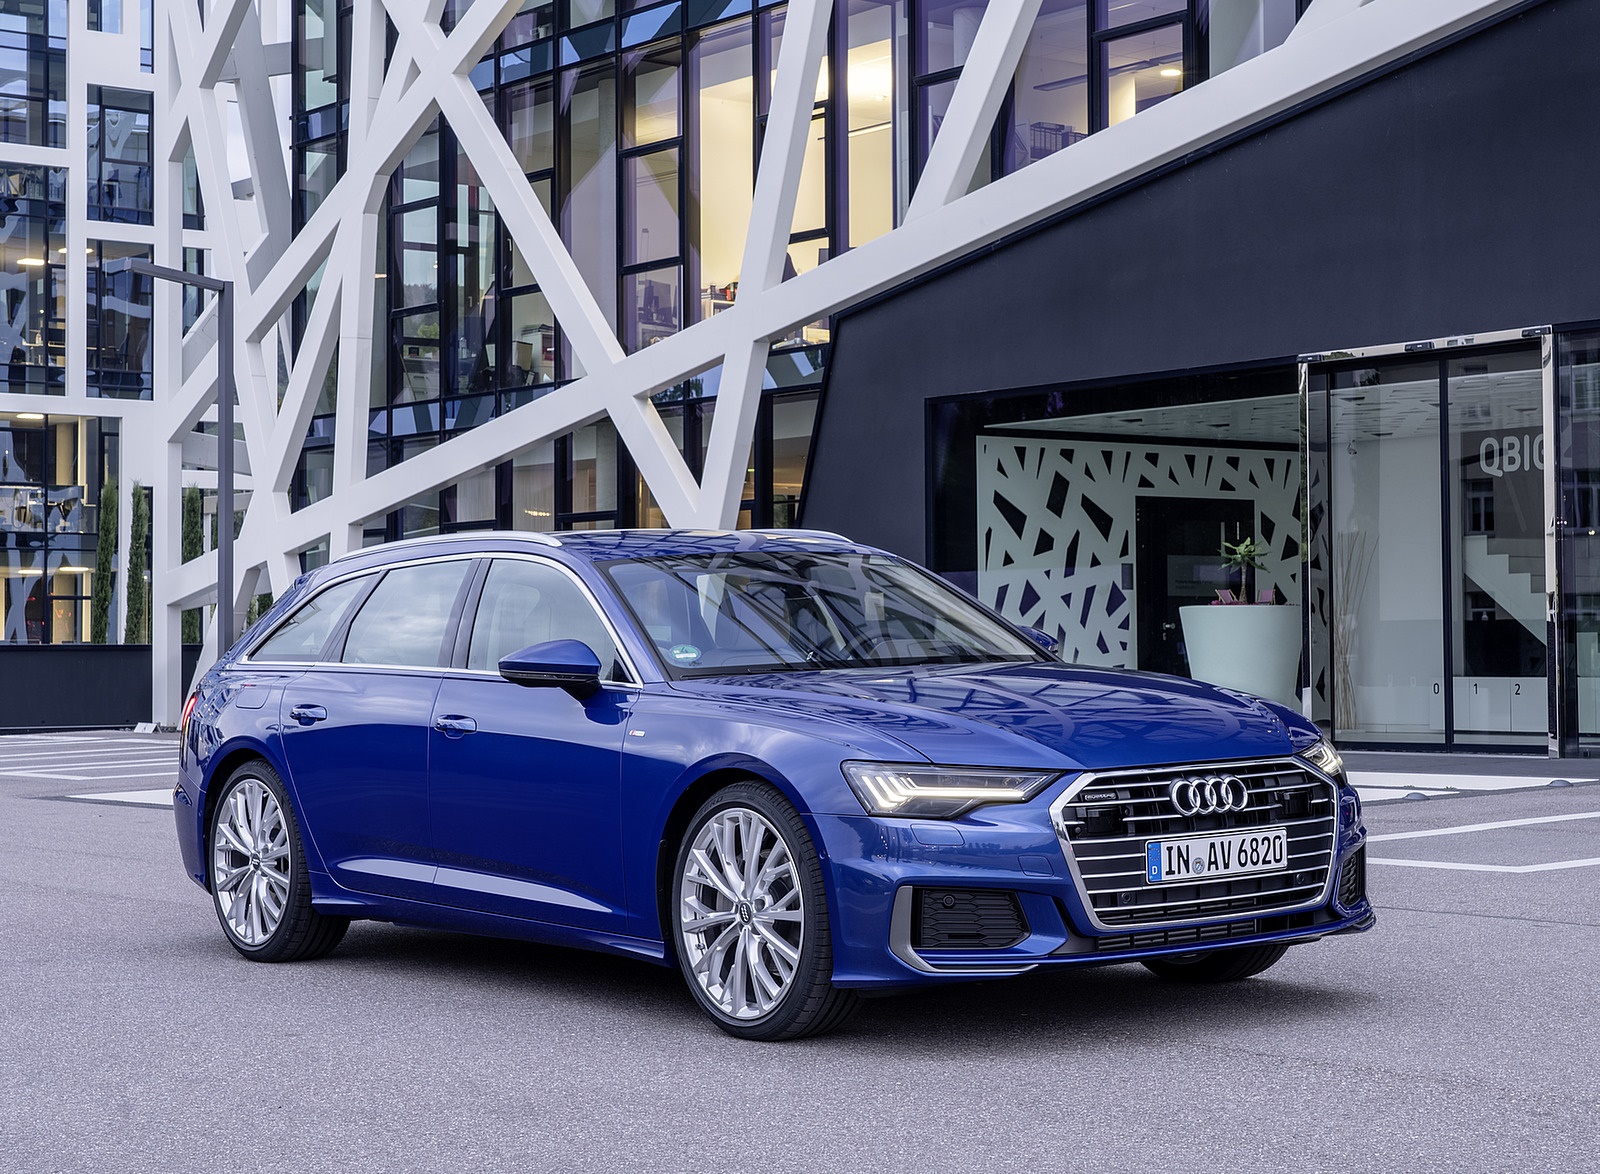 2019 Audi A6 Avant (Color: Sepang Blue) Front Three-Quarter Wallpapers #34 of 86